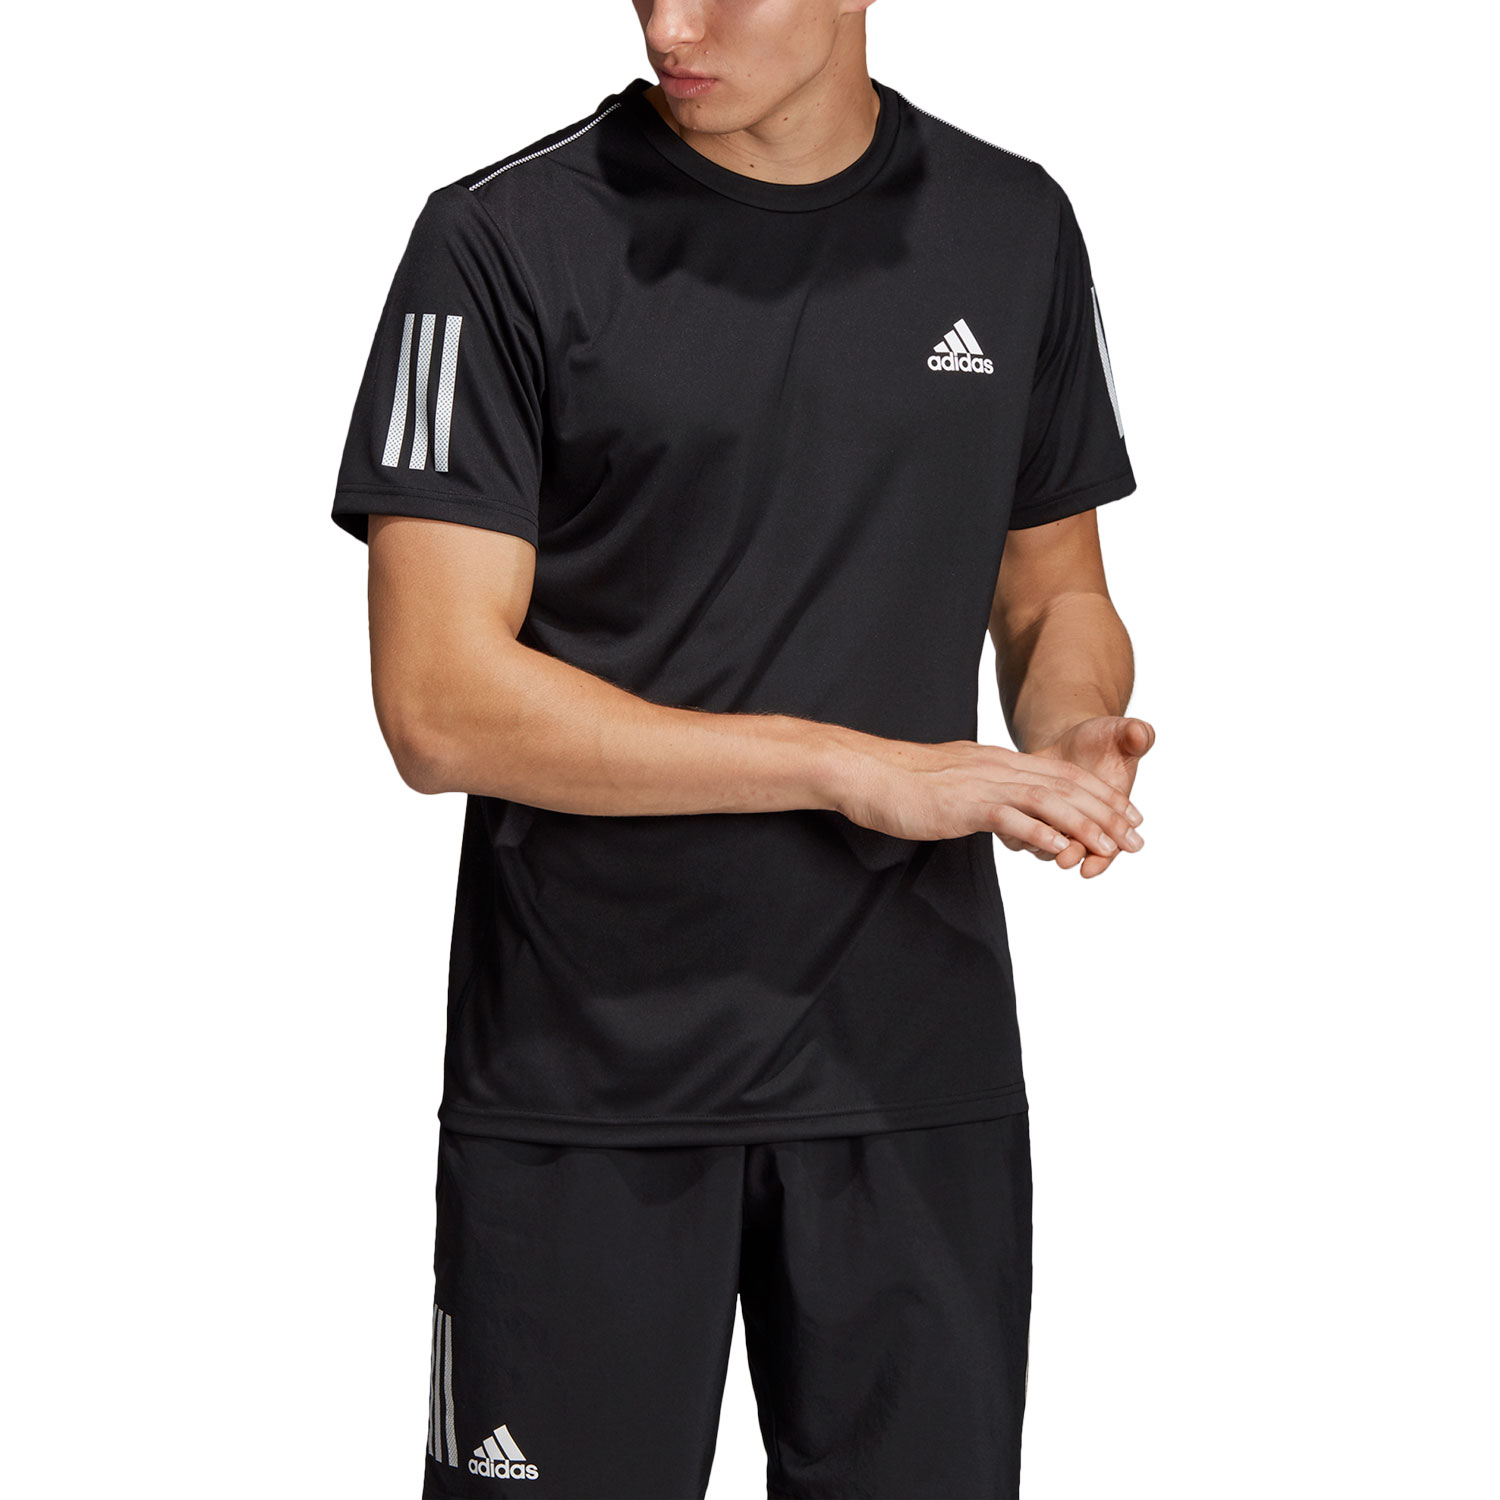 adidas Club 3 Stripes Camiseta Tenis Hombre - Black/White